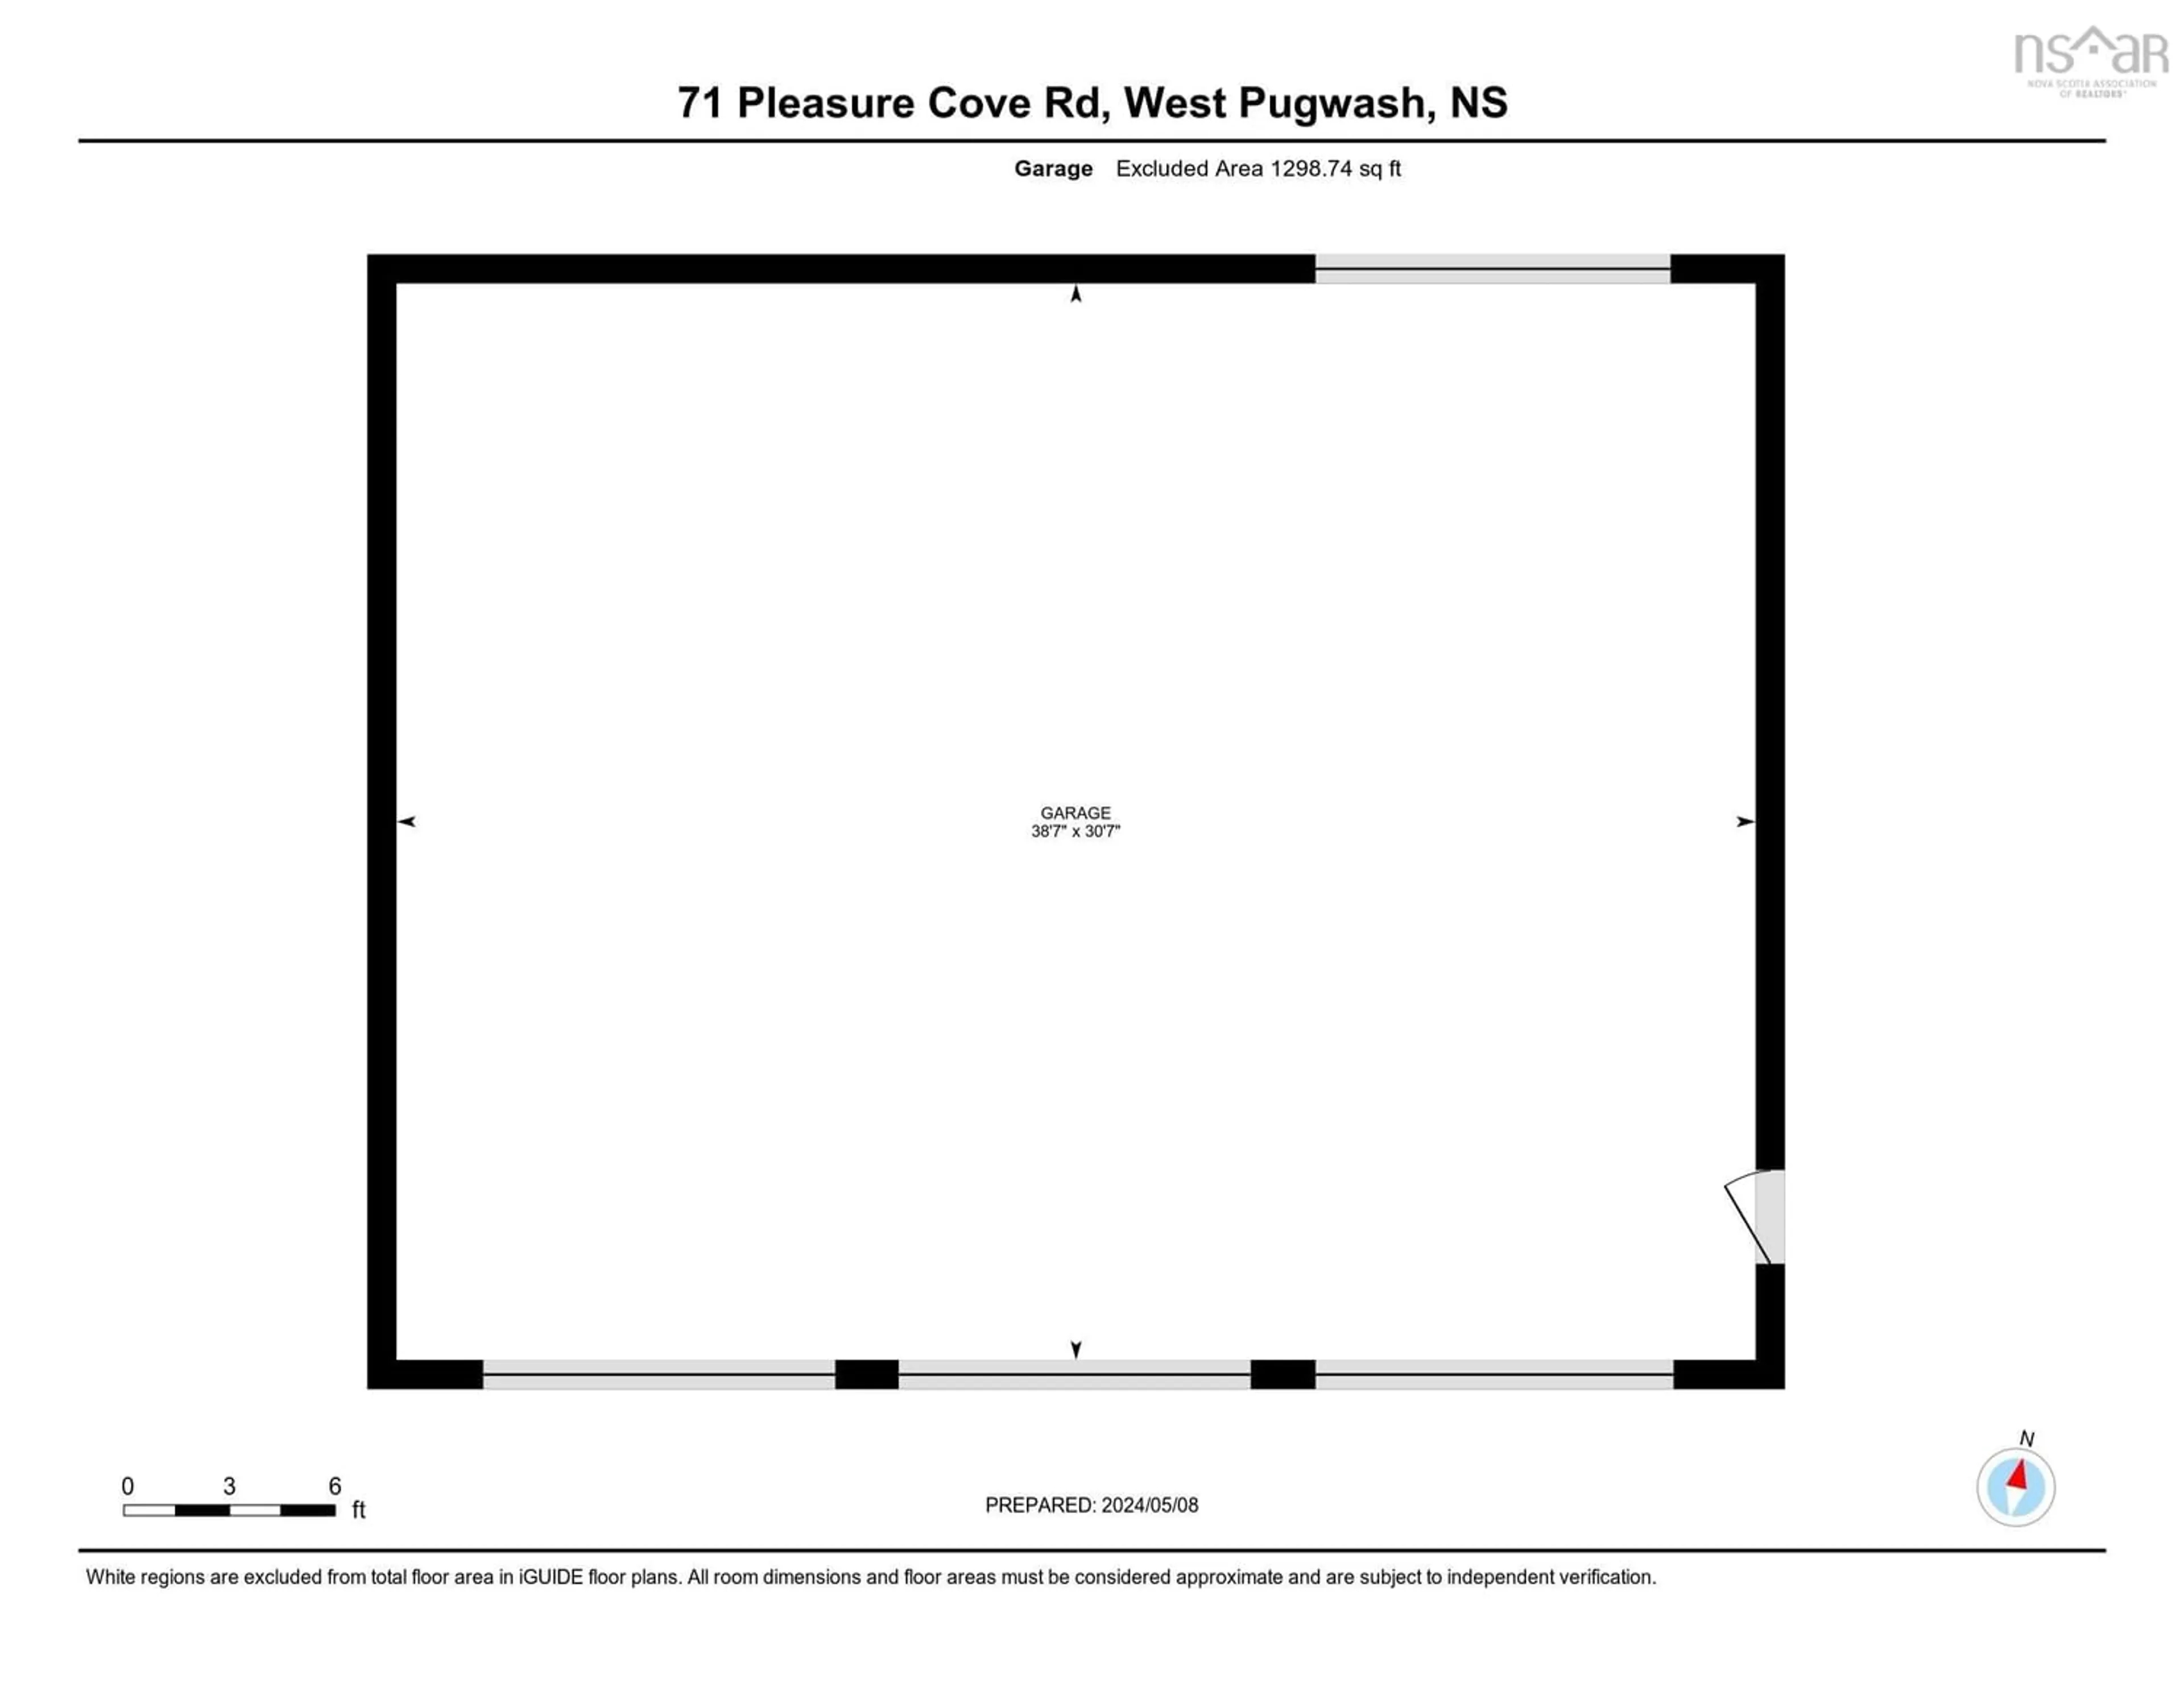 Floor plan for 71 Pleasure Cove Rd, West Pugwash Nova Scotia B0K 1L0